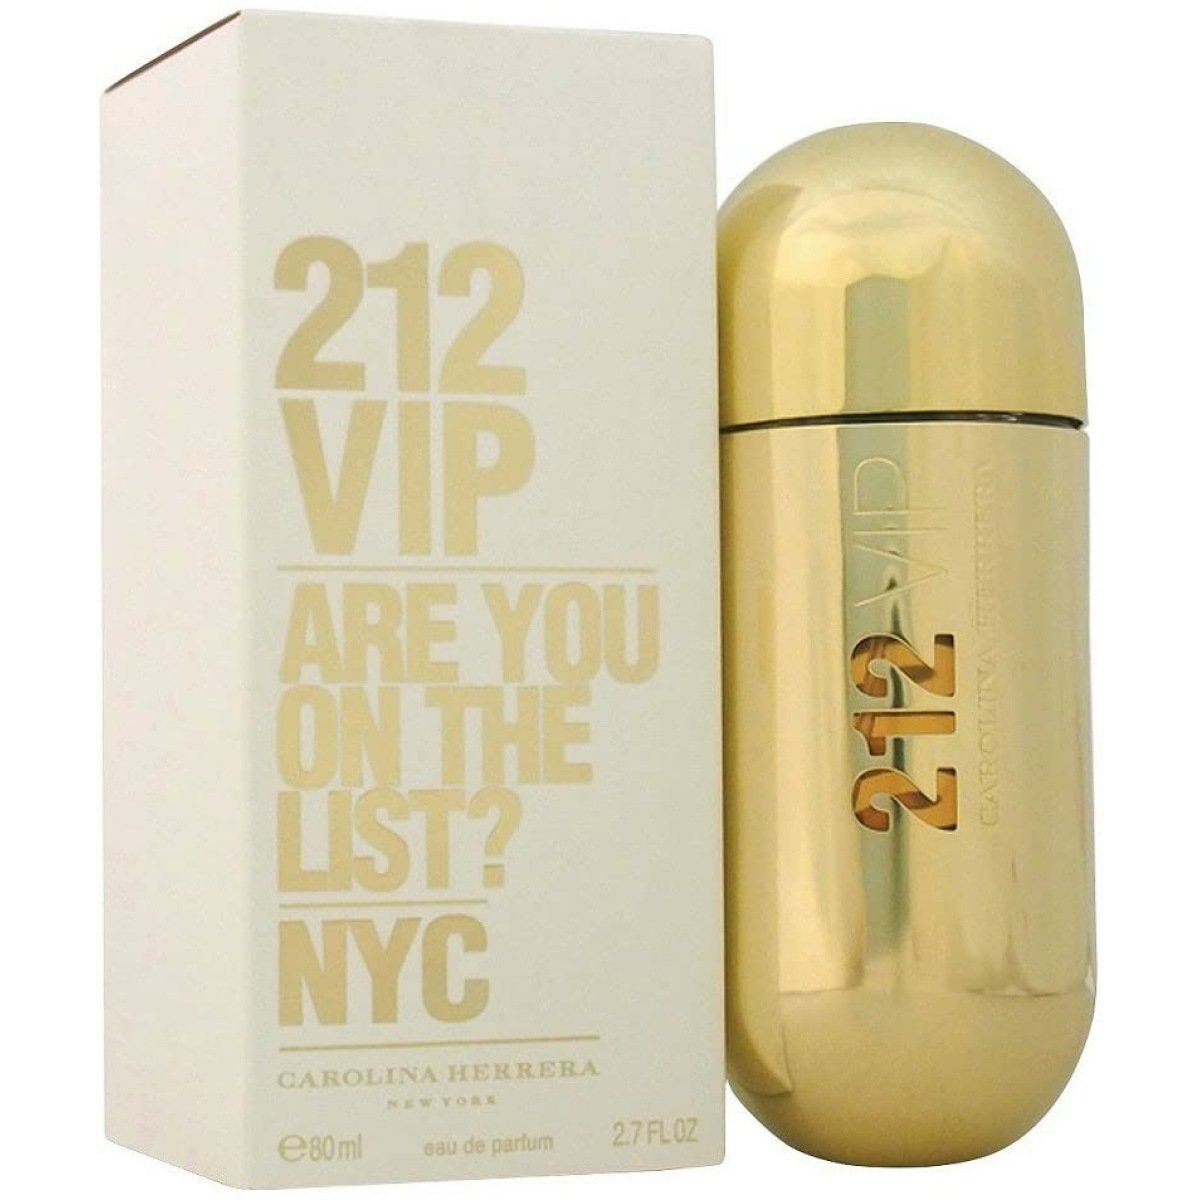 Carolina Herrera 212 Vip EDP Perfume For Women 80ml